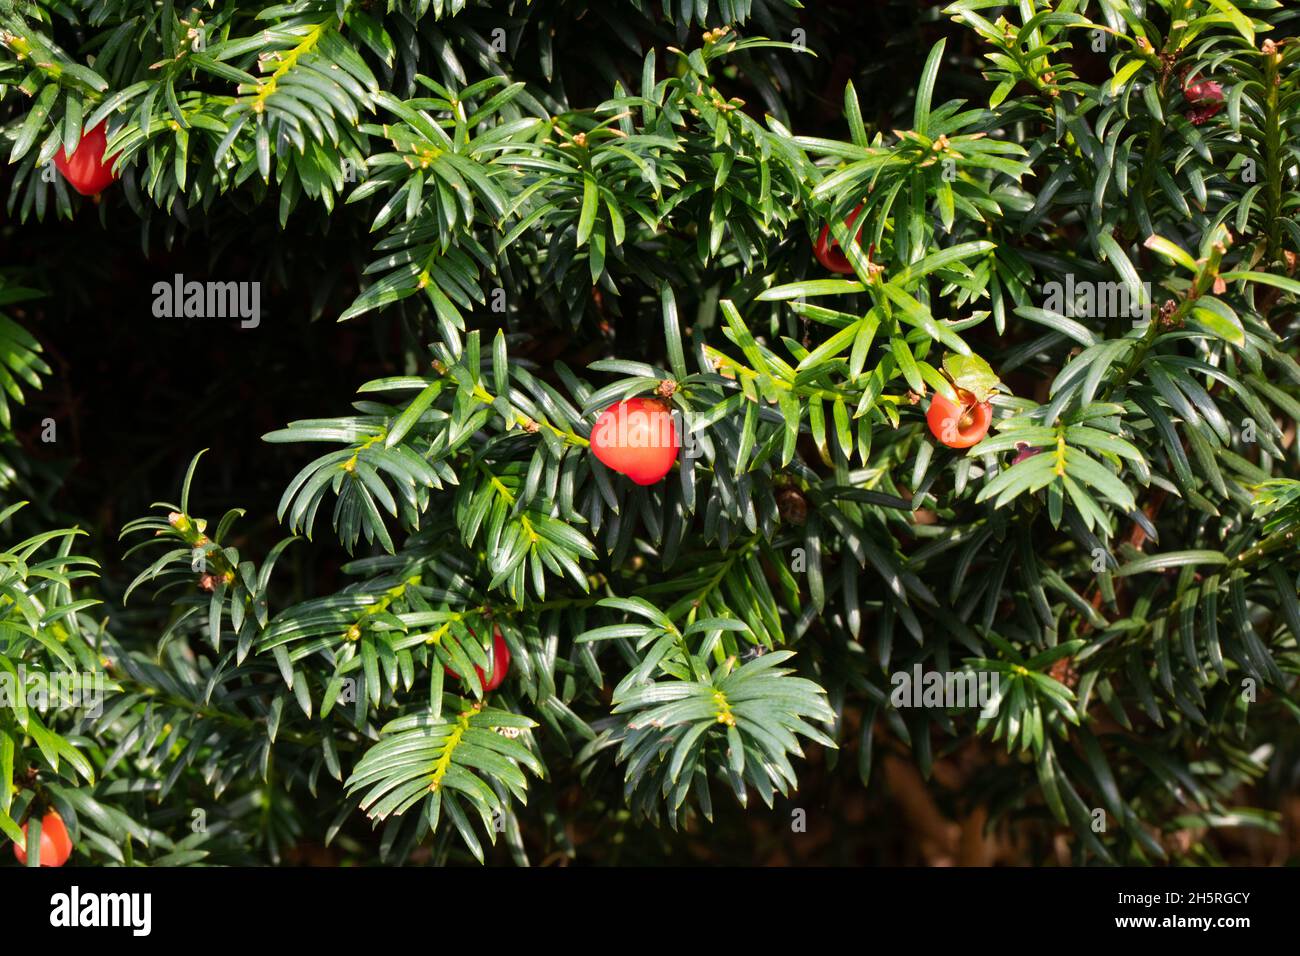 Eibe (Taxus baccata) Baum Hedge Früchte, Beeren, Beeren und Blätter giftig. Außer einigen Vögeln. Seien Sie sich bewusst. Stockfoto